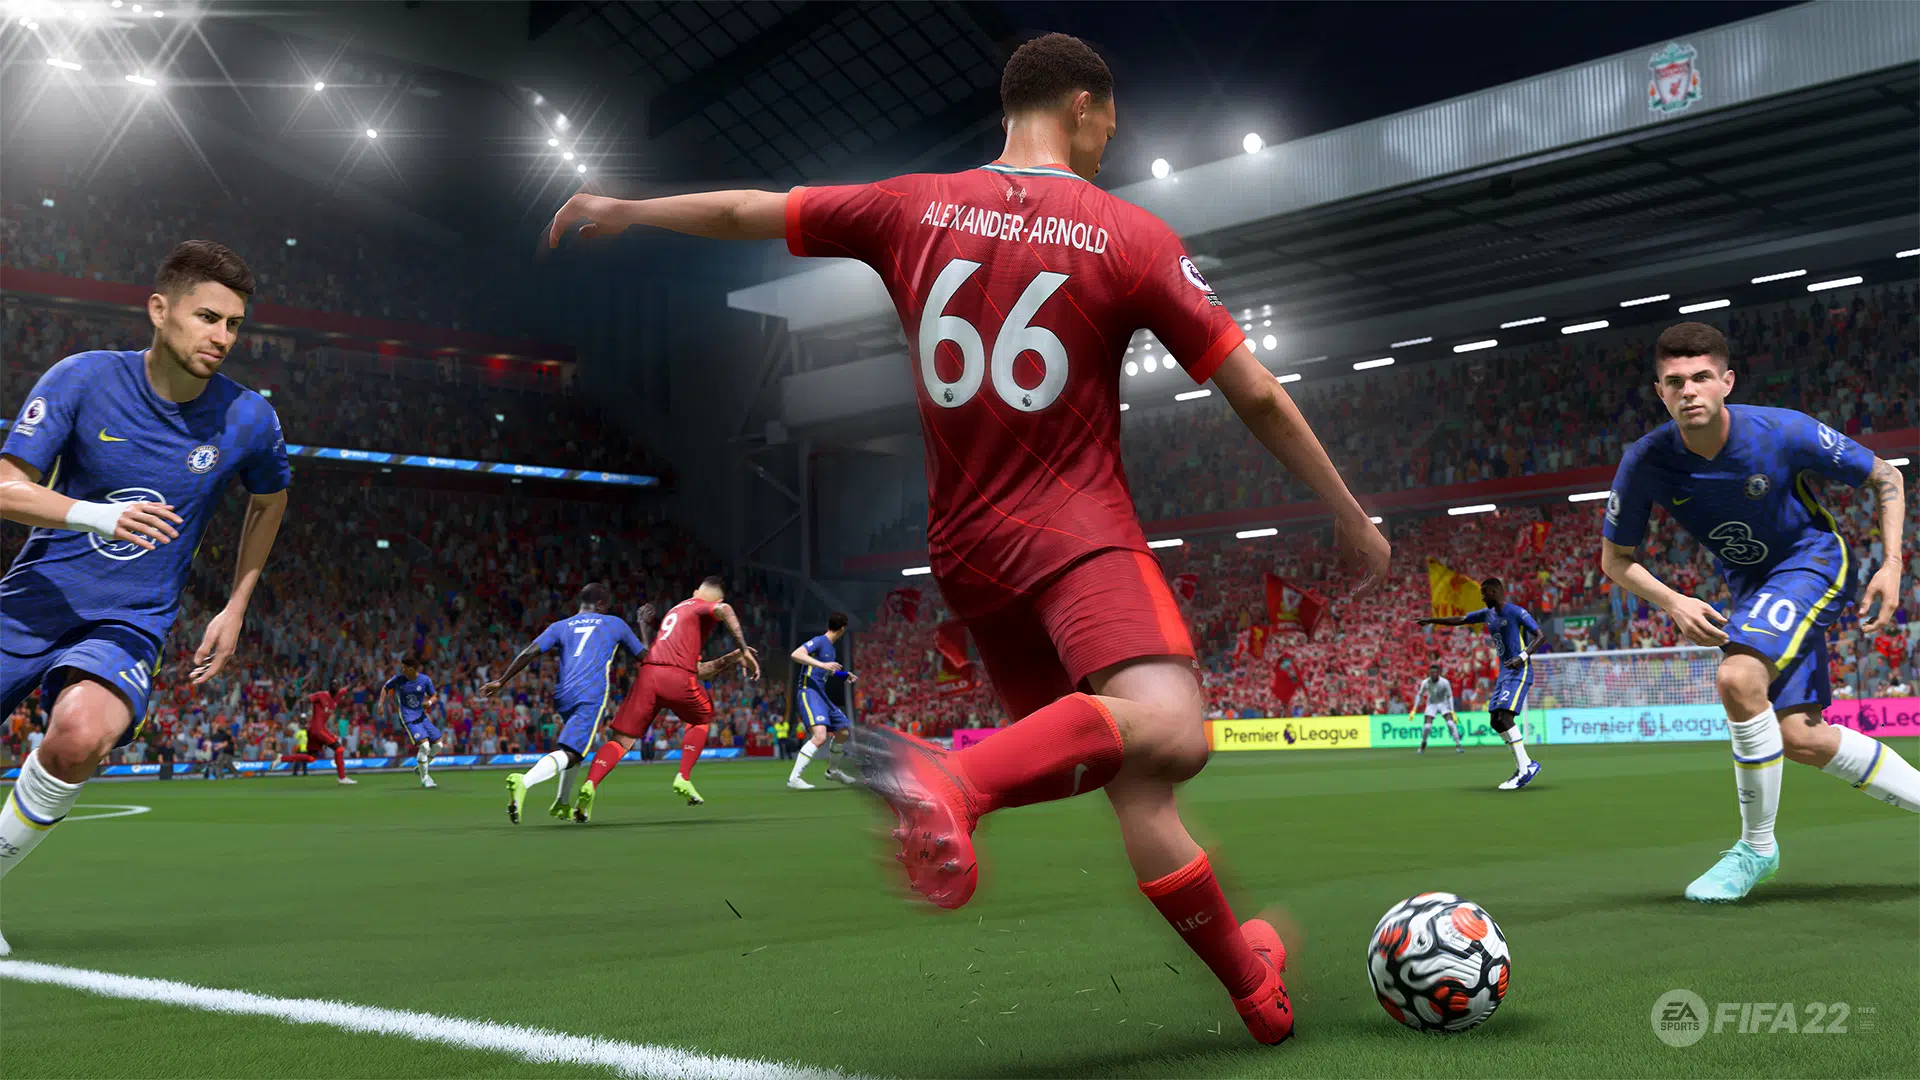 FIFA 22 update 1.29